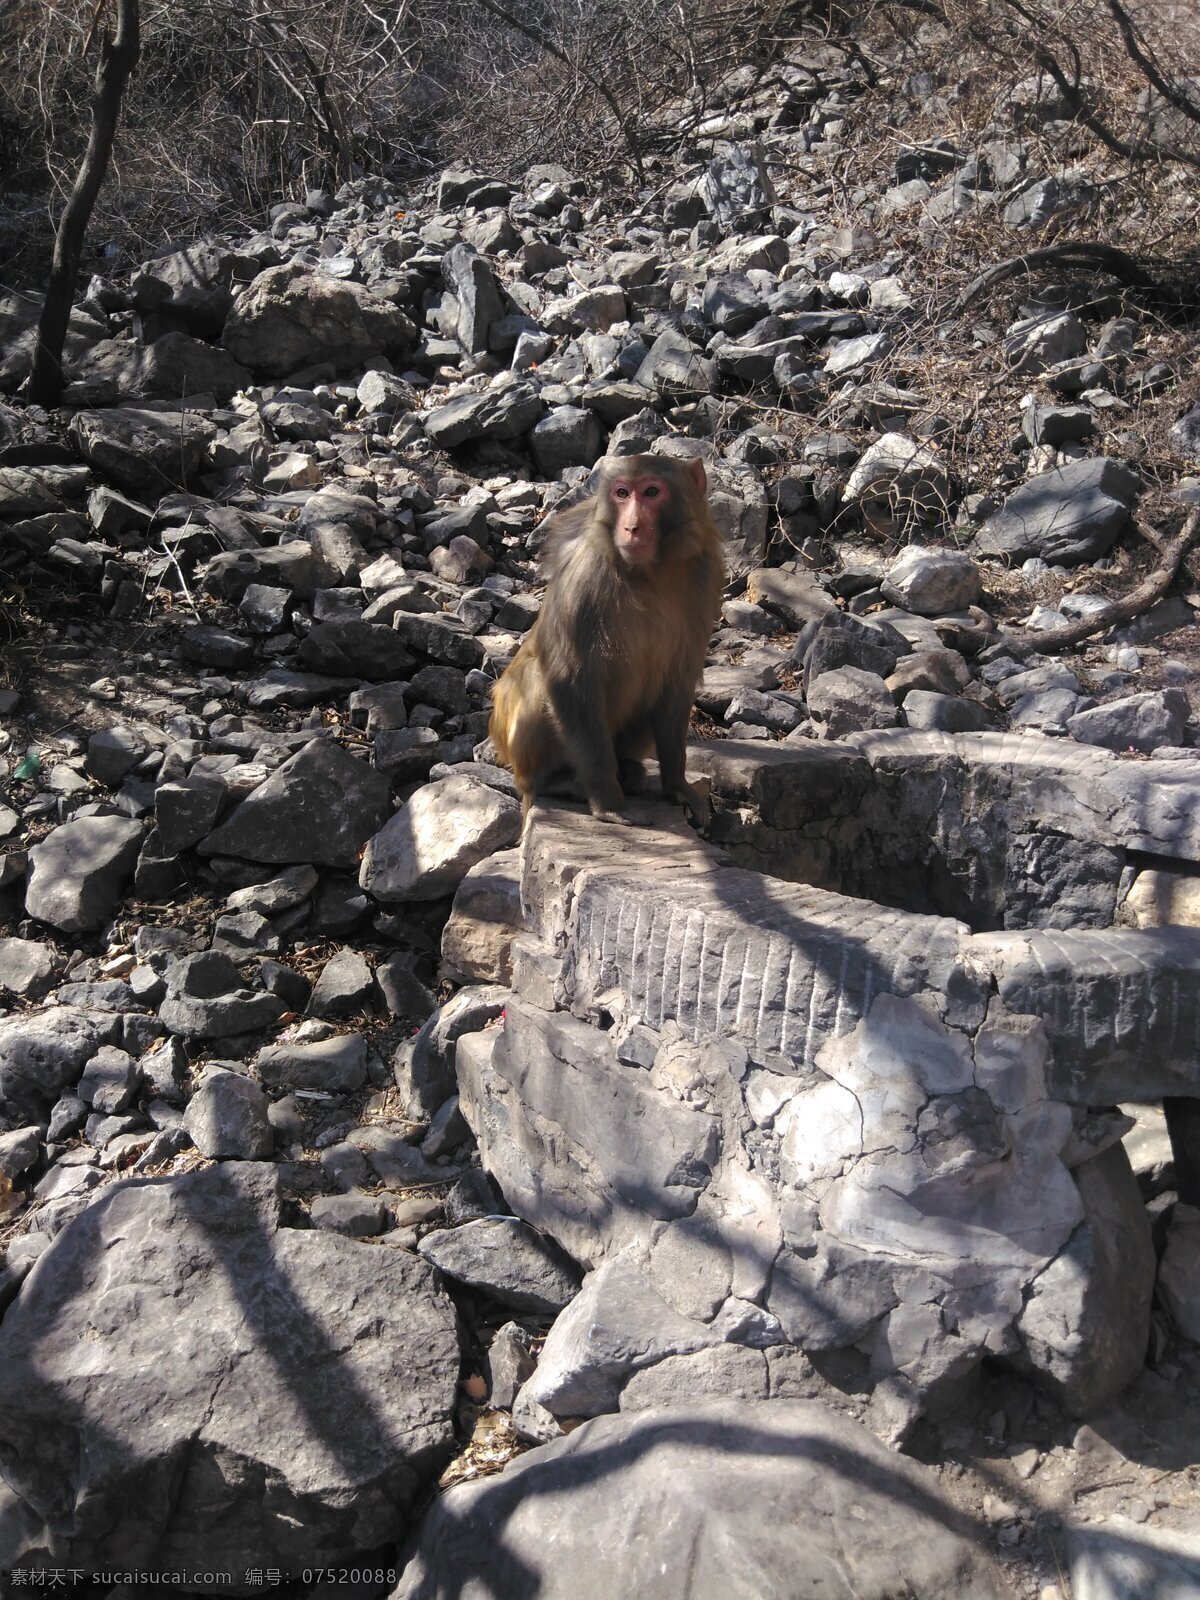 野生猴子 神农山 小猴子 野猴子 山上猴子 旅游拍摄 生物世界 野生动物